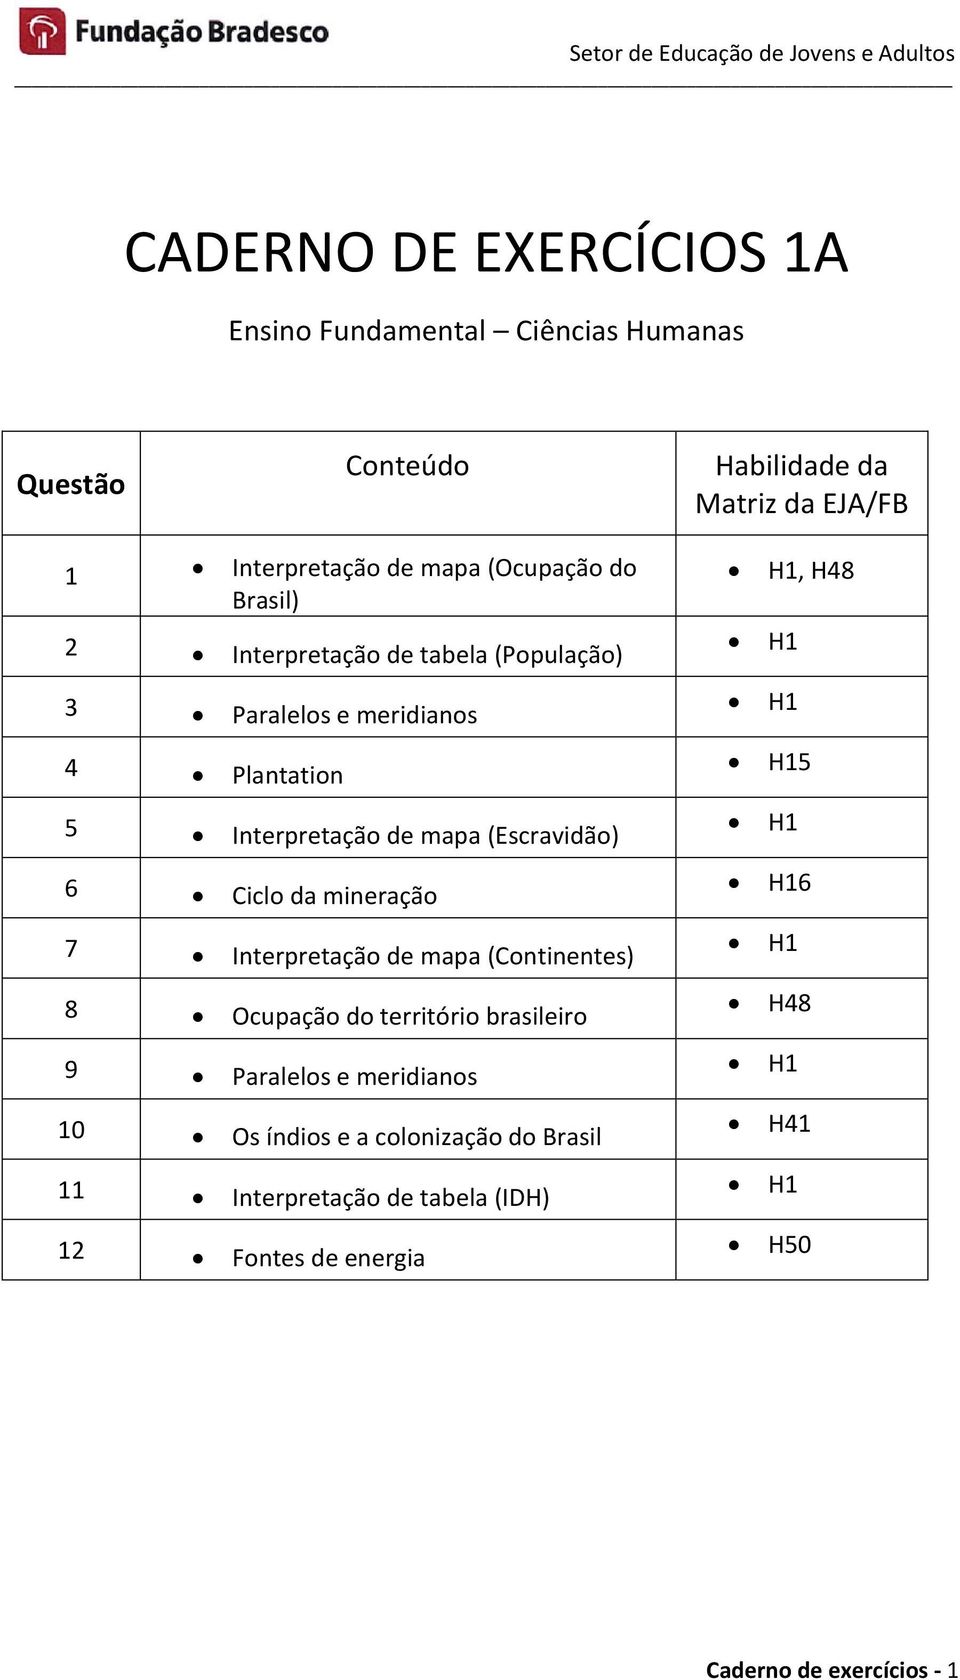 (Escravidão) 6 Ciclo da mineração 7 Interpretação de mapa (Continentes) 8 Ocupação do território brasileiro 9 Paralelos e